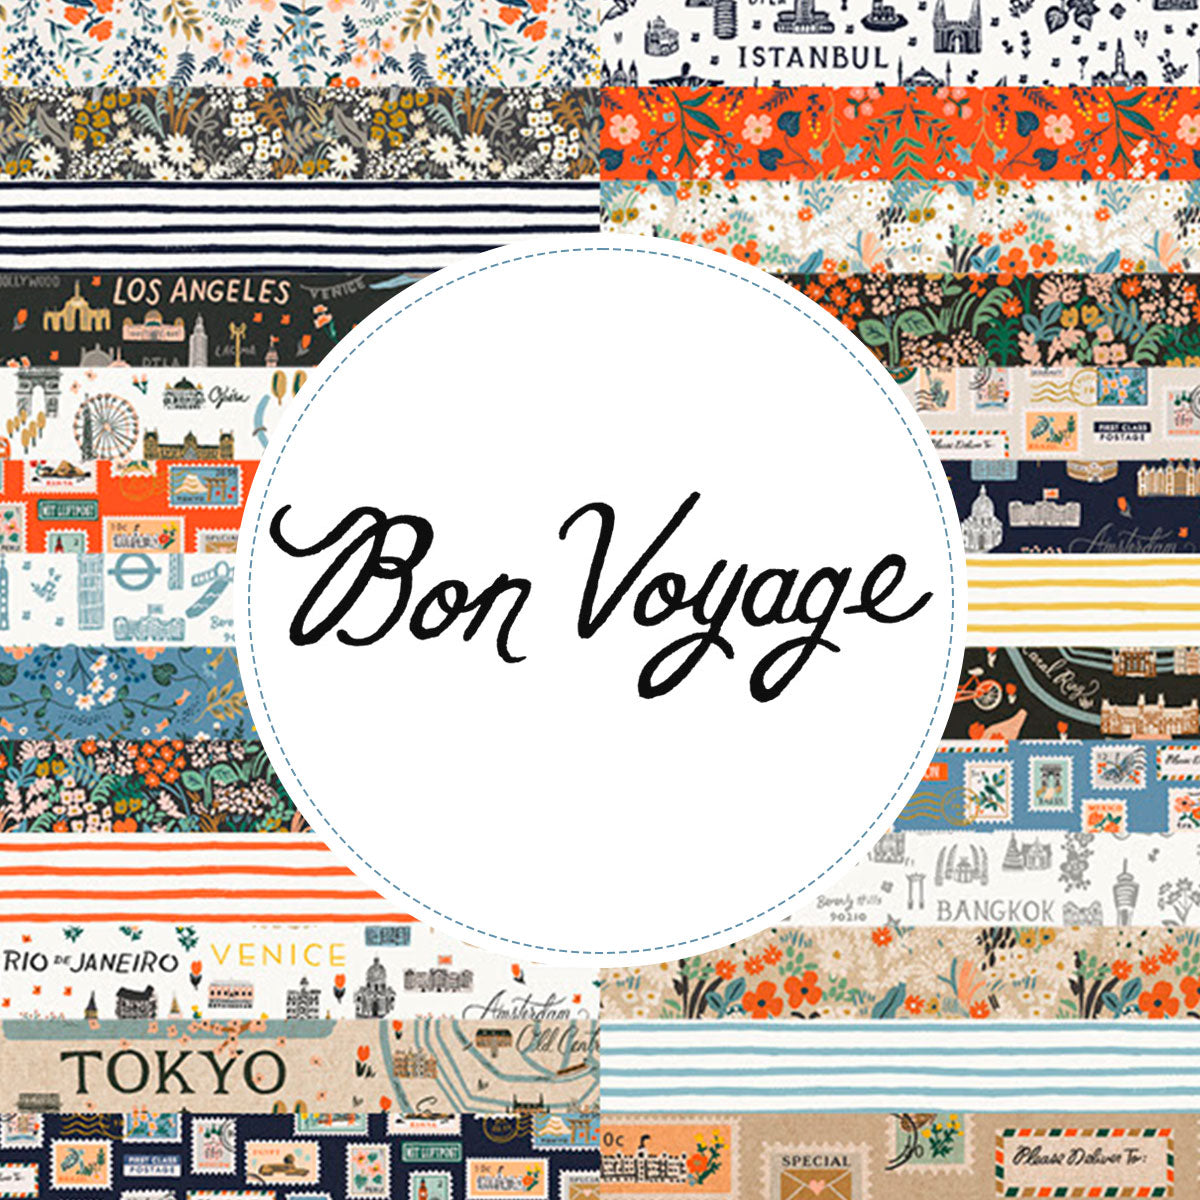 Bon Voyage Cotton Canvas Tote Bag – The Cotton & Canvas Co.